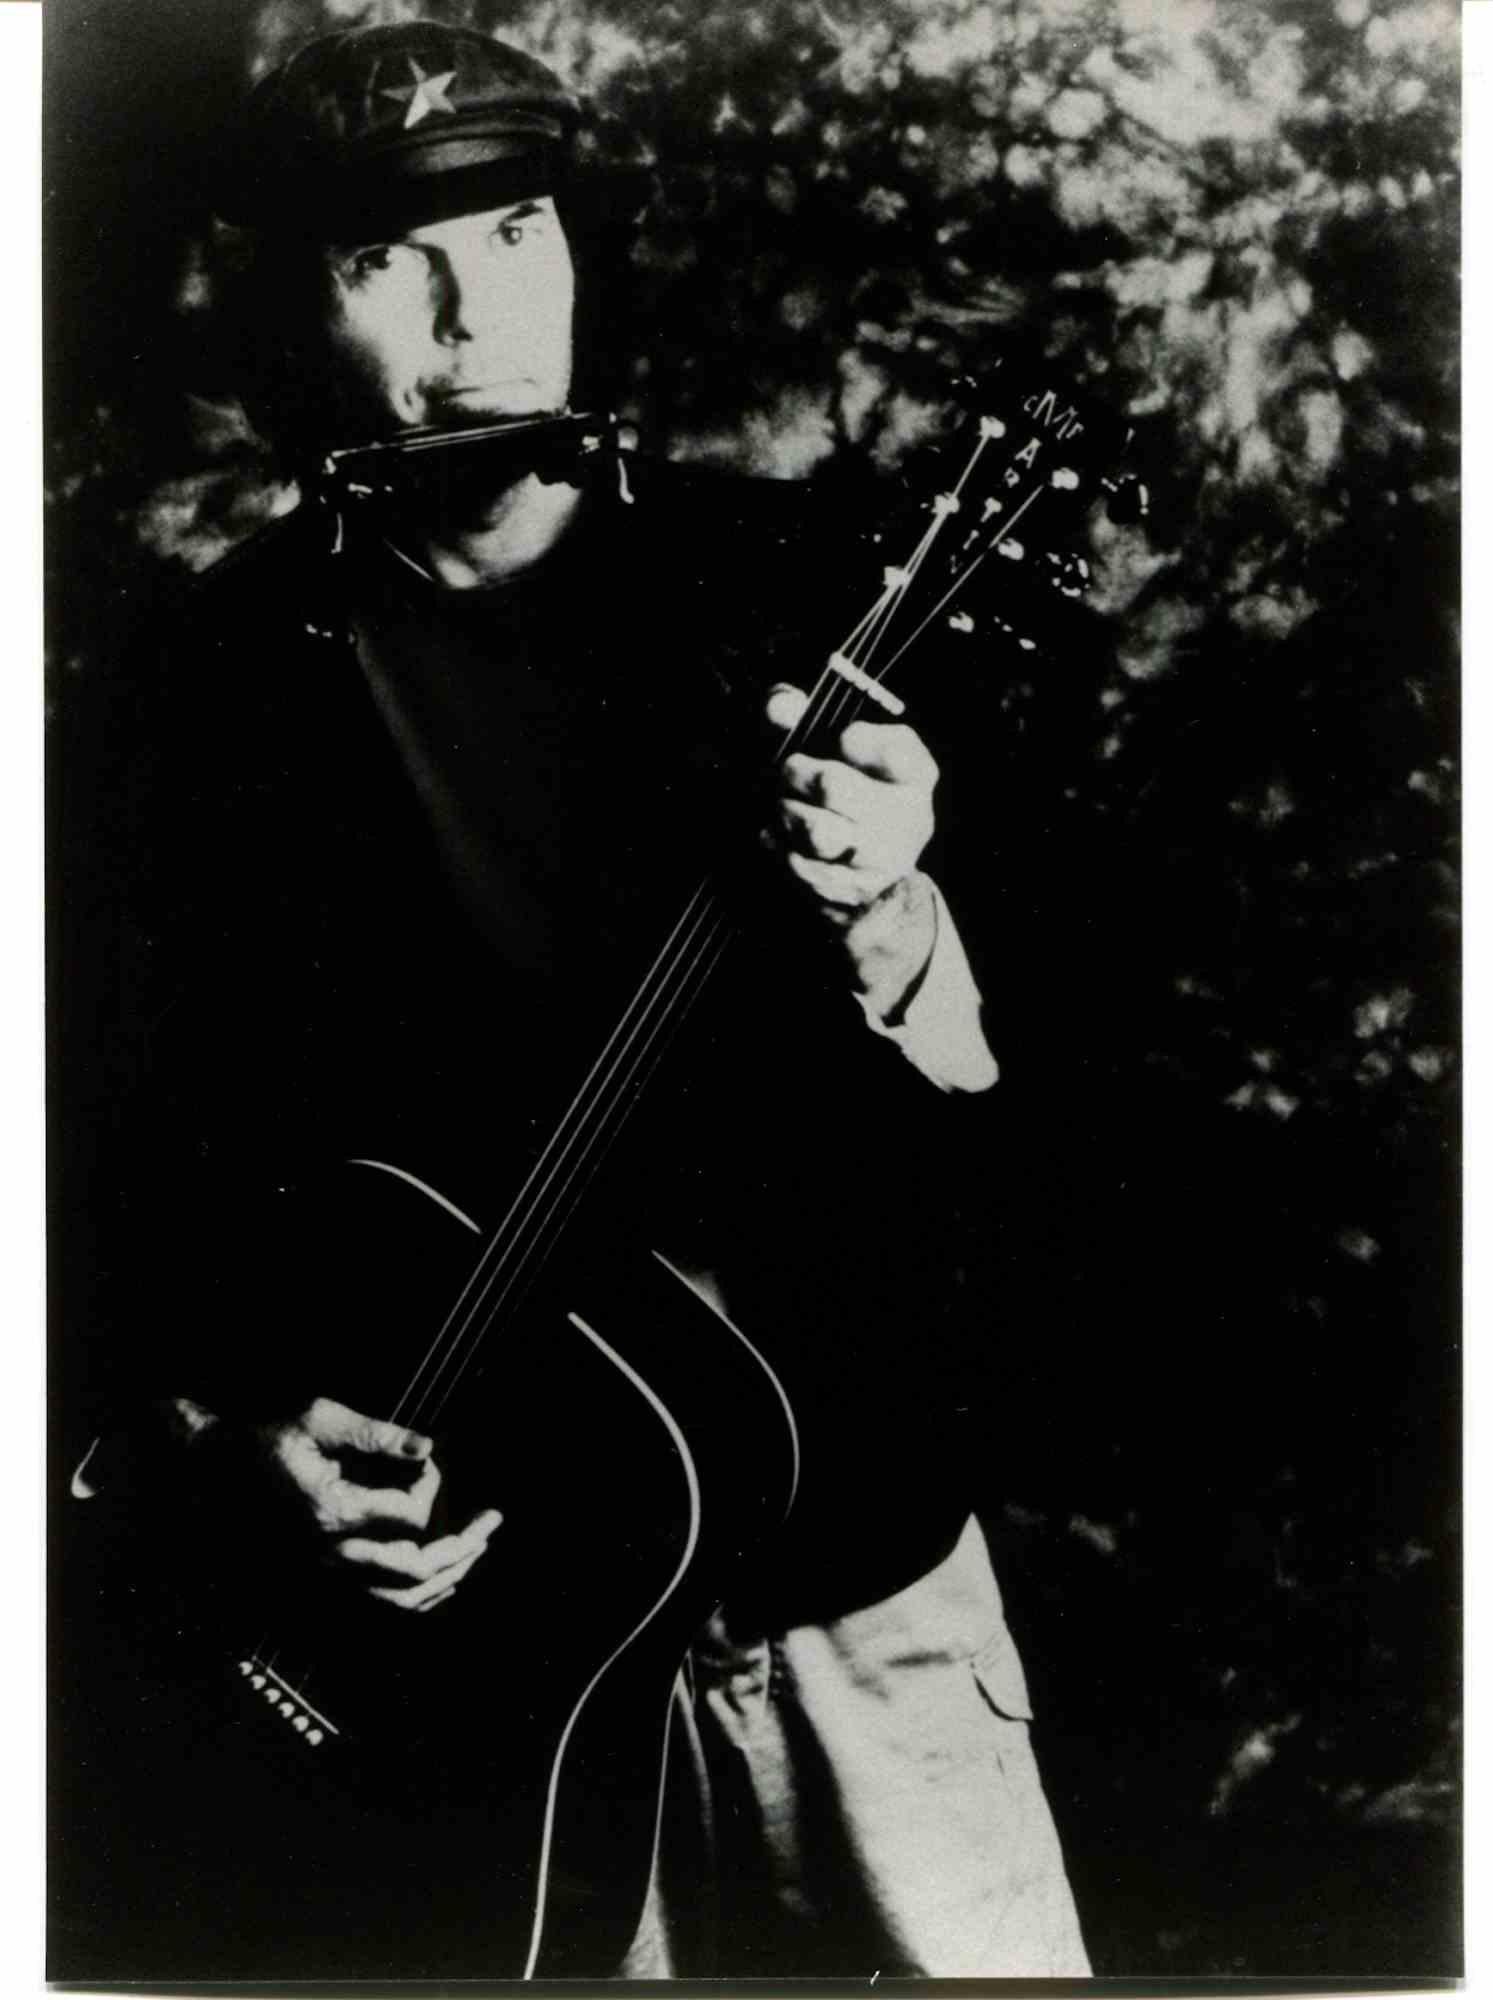 Unknown Portrait Photograph - Neil Young's Concert - Photo - 1980s